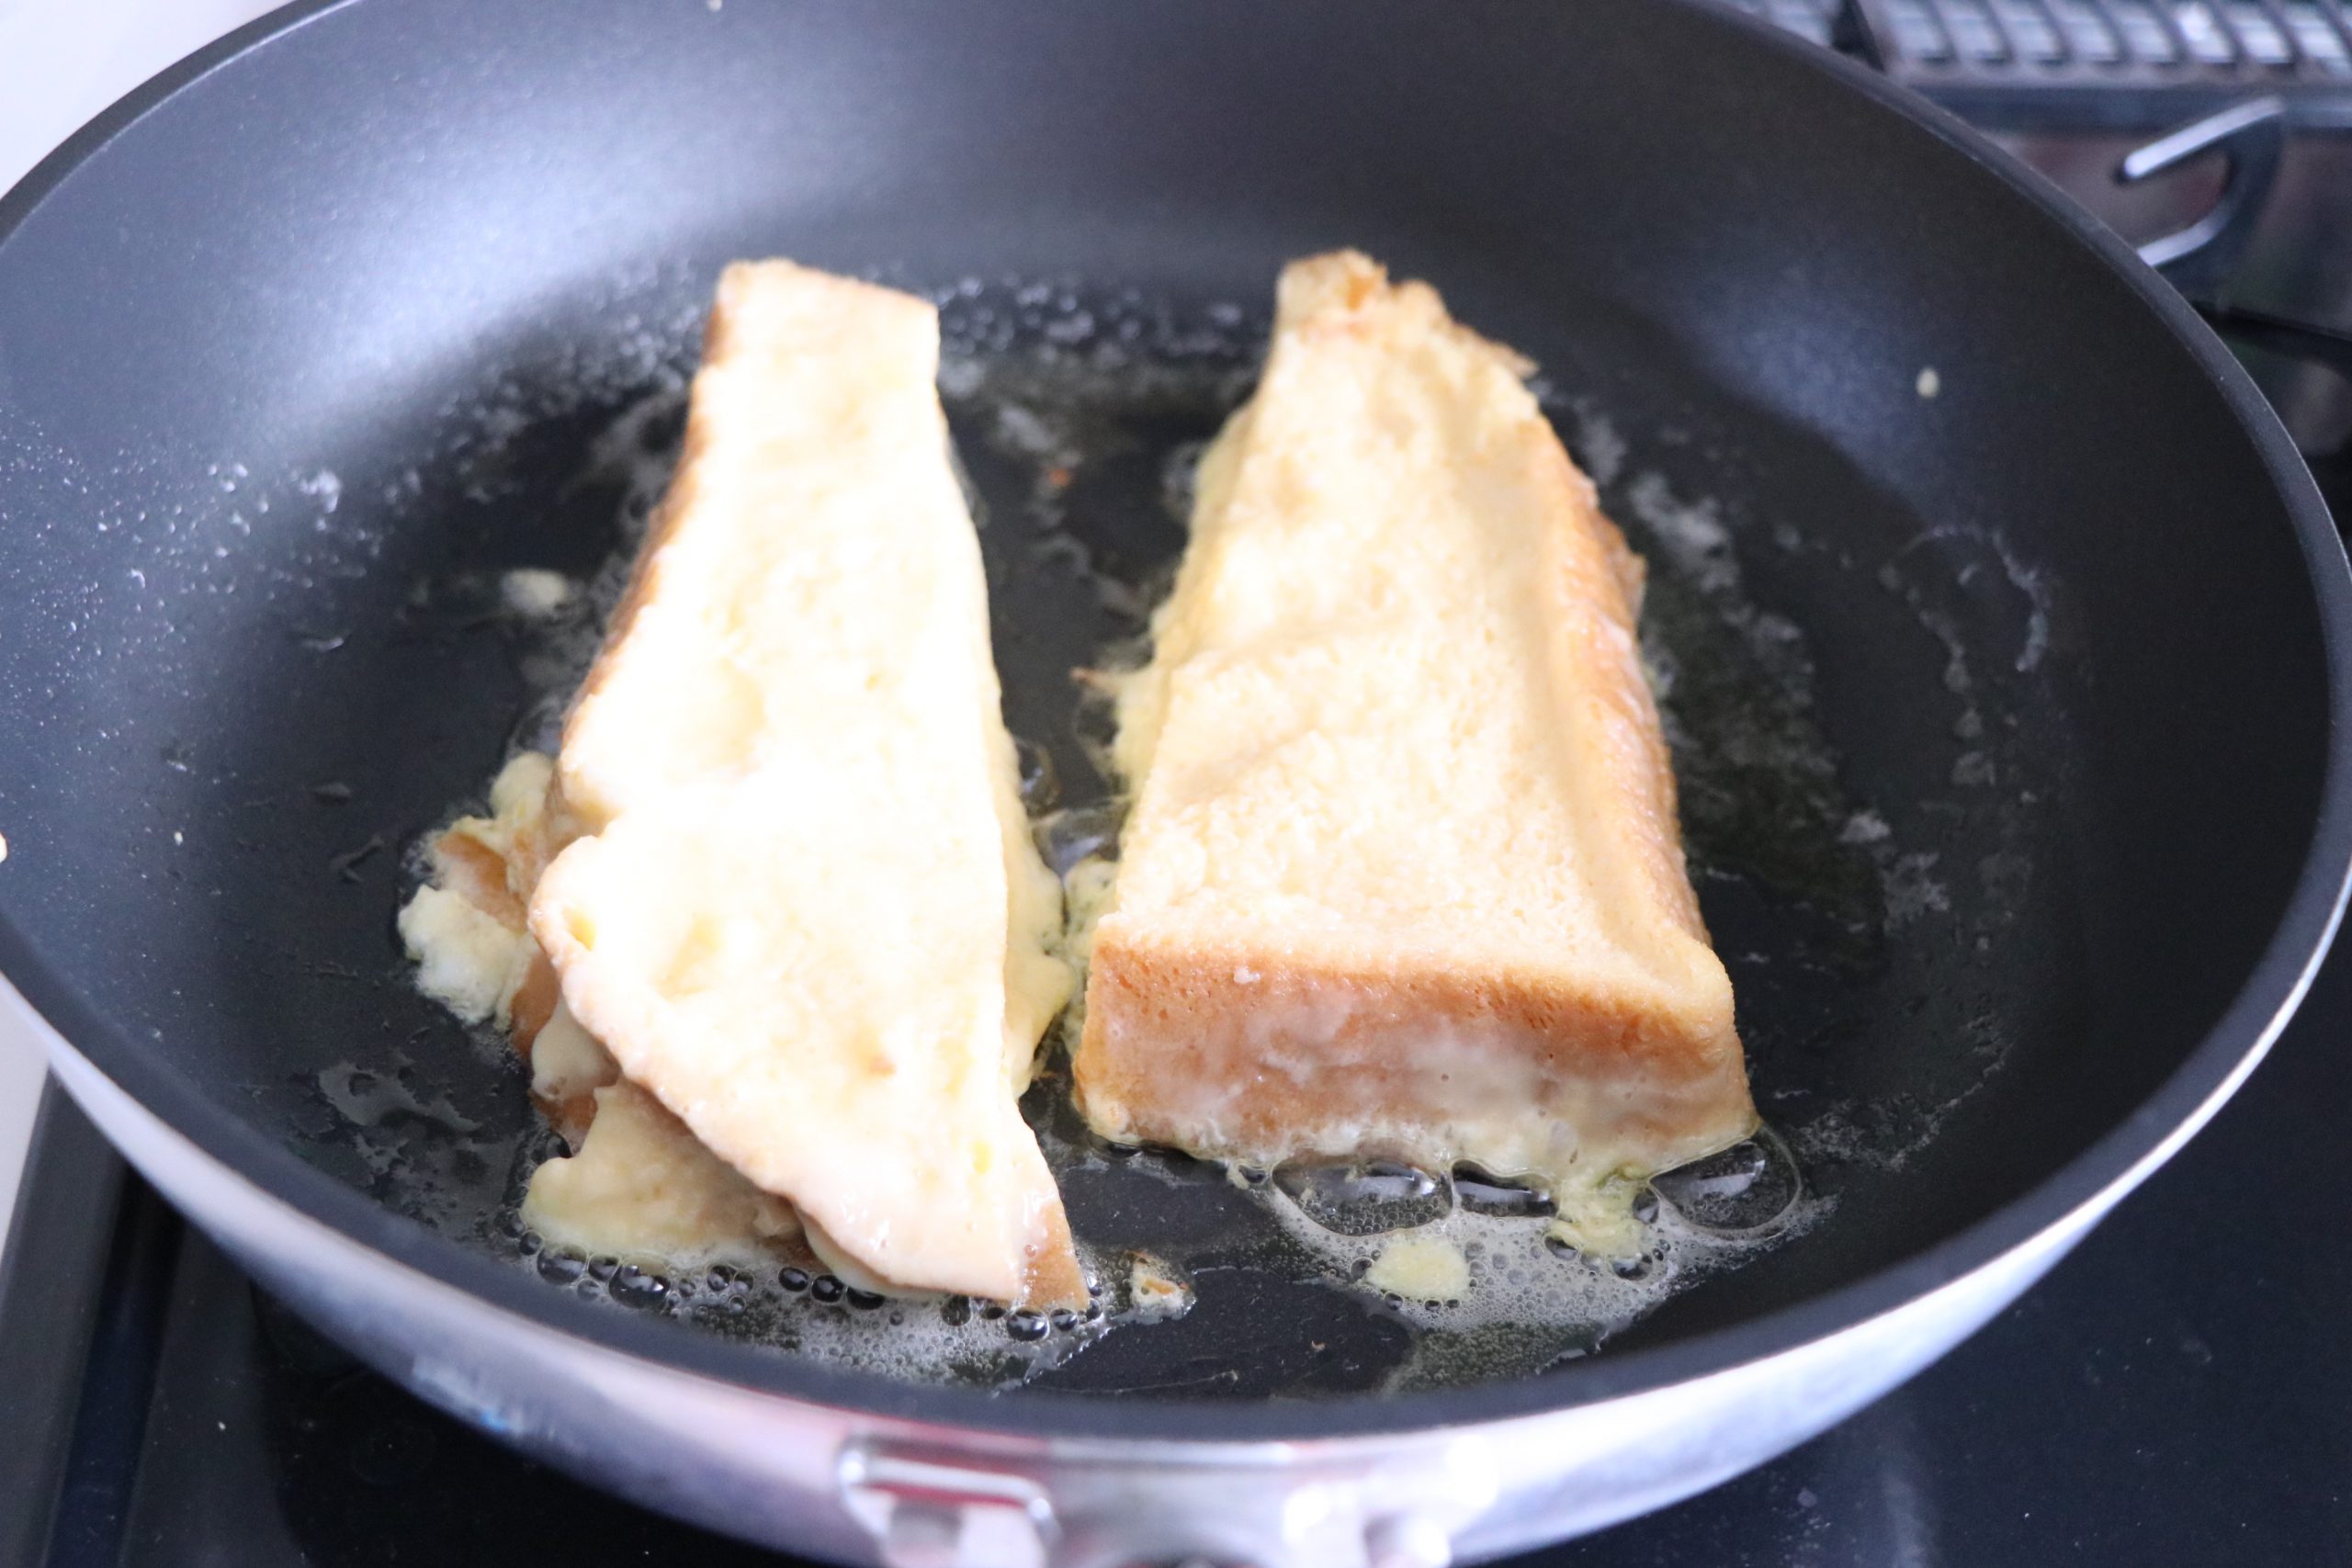 バターをひいたフライパンで焦げ目がつくまで焼く。
ひっくり返してチーズをのせ、蓋をしてチーズを溶かす。